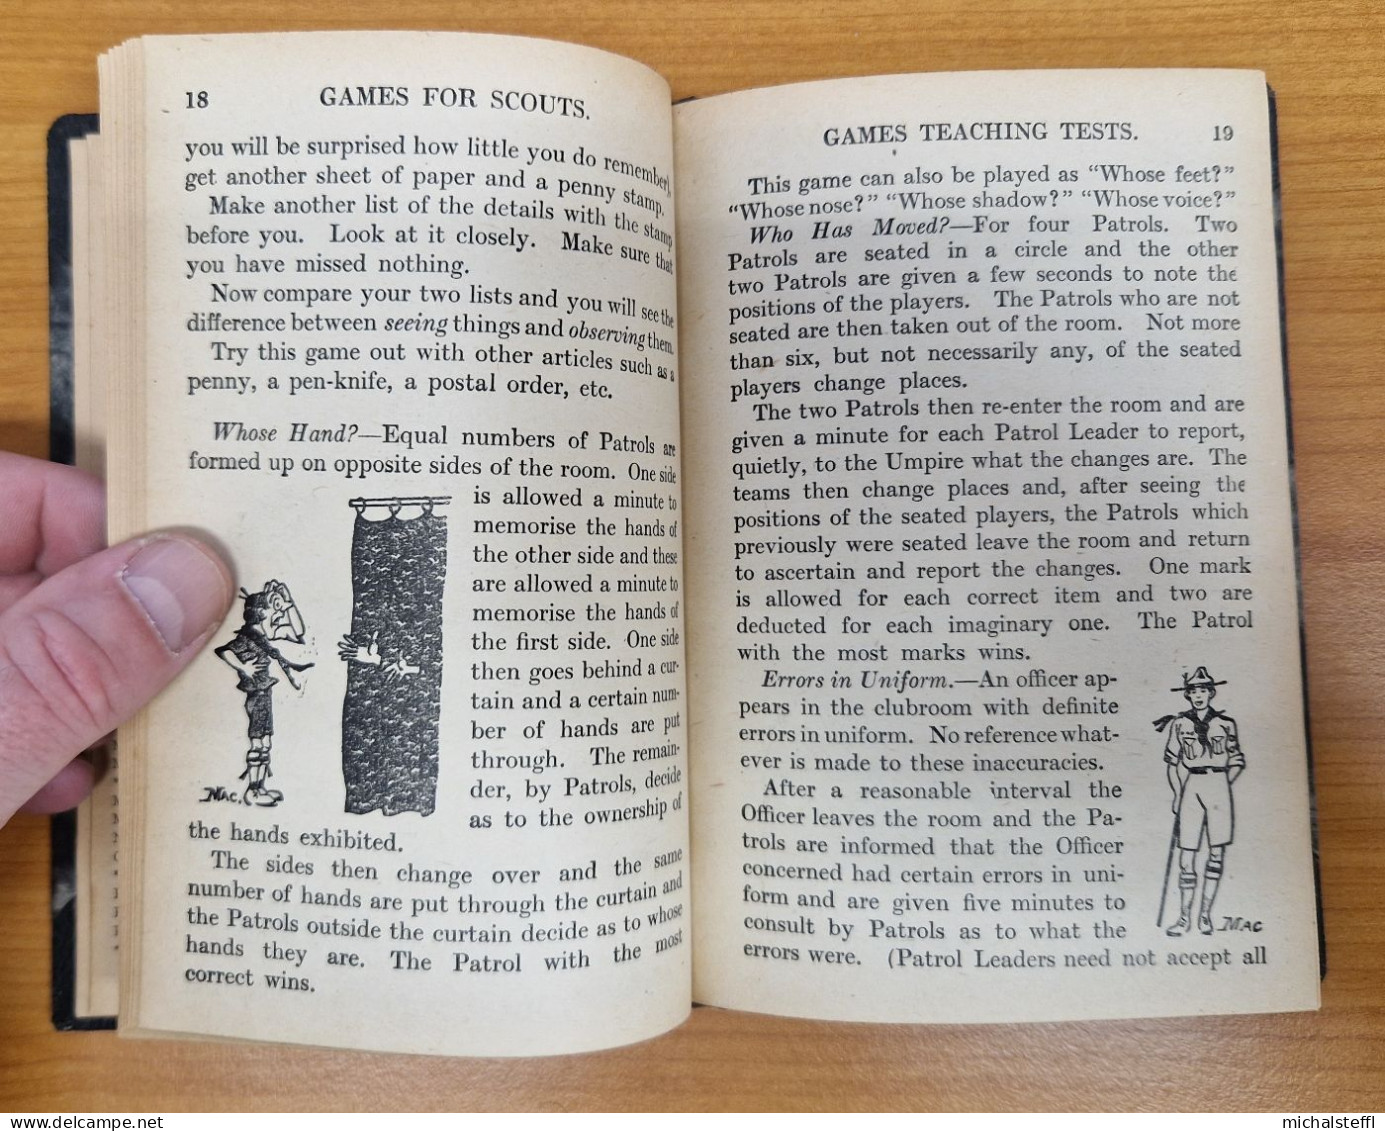 Games For Scouts, Mackenzie, A W N, 1943 - Pfadfinder-Bewegungen